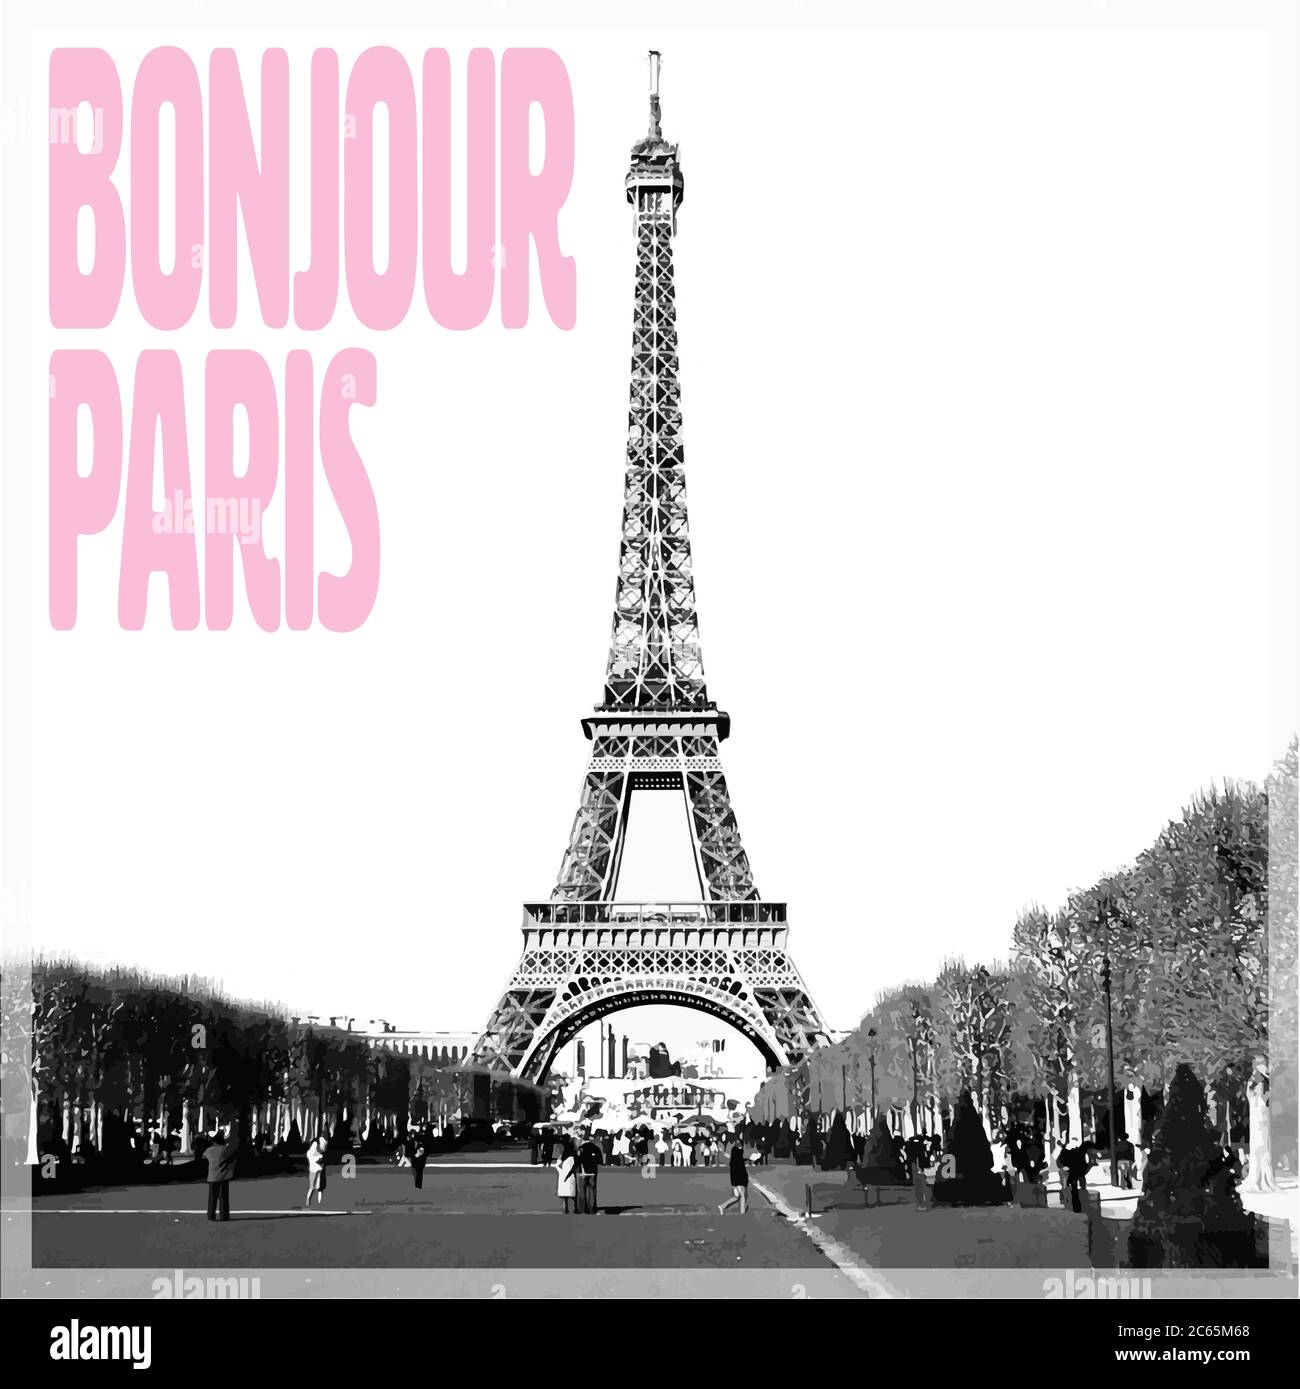 Bonjour Paris - carte romantique avec citation rose et photo vectorisée de la Tour Eiffel en noir et blanc, France, Europe Illustration de Vecteur